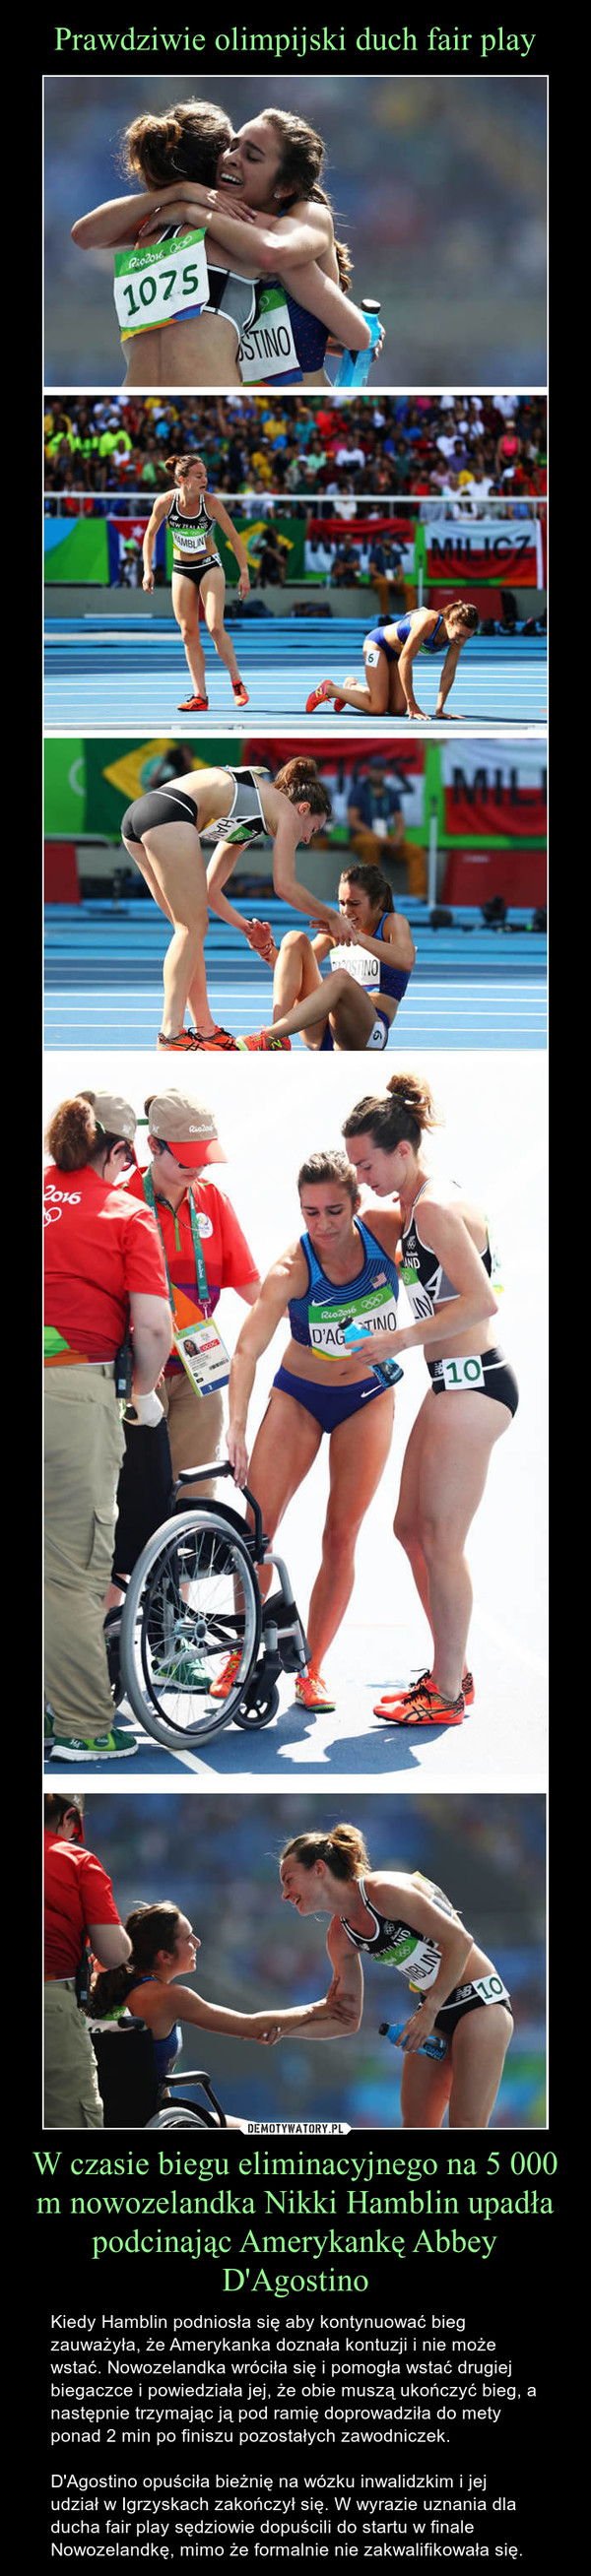 Prawdziwie olimpijski duch fair play W czasie biegu eliminacyjnego na 5 000 m nowozelandka Nikki Hamblin upadła podcinając Amerykankę Abbey D'Agostino